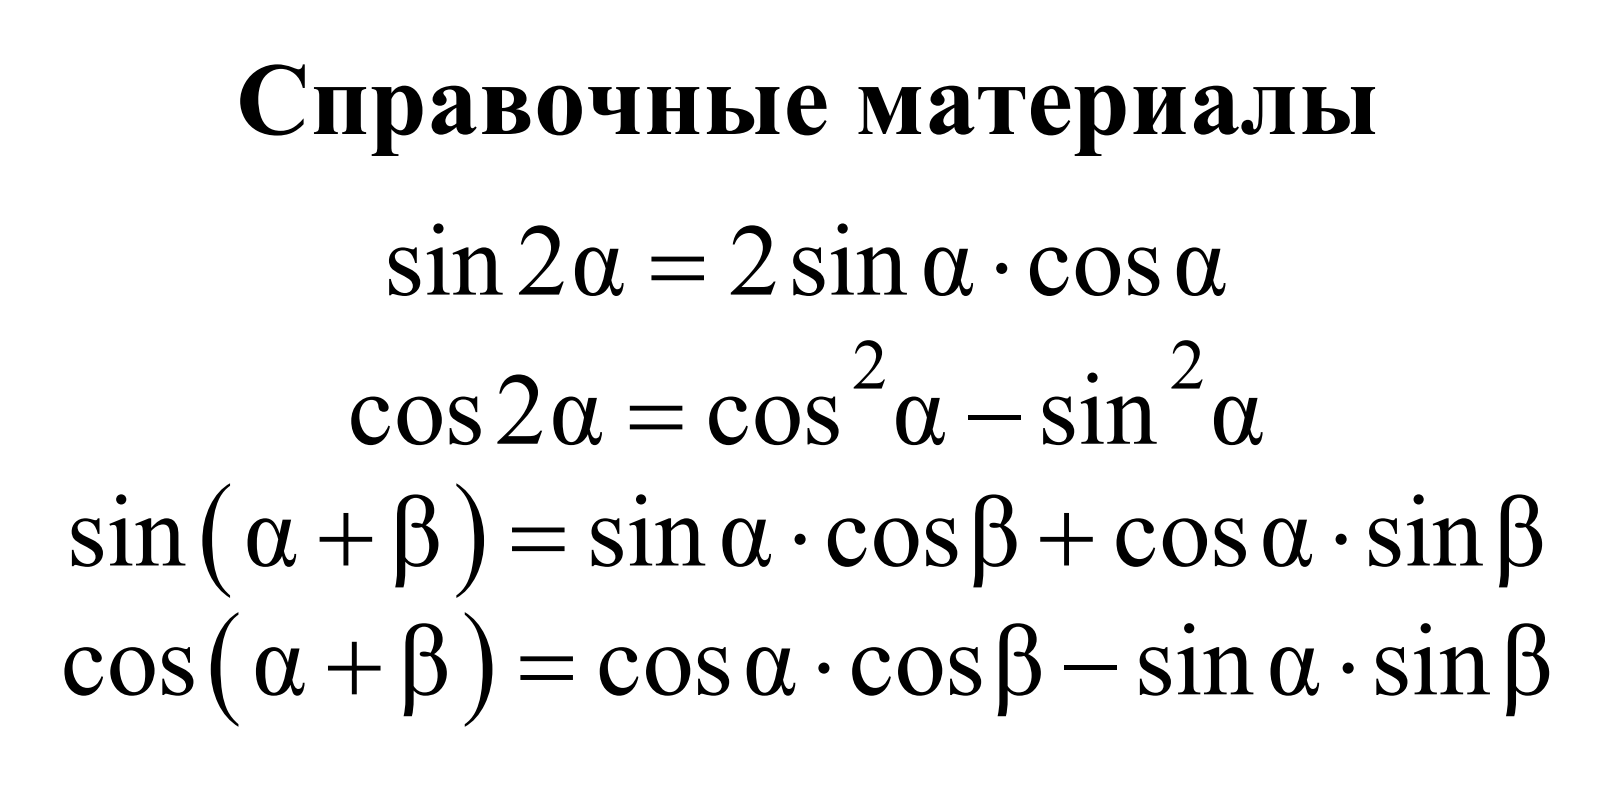 Вся справка на профильной математике. Источник: fipi.ru